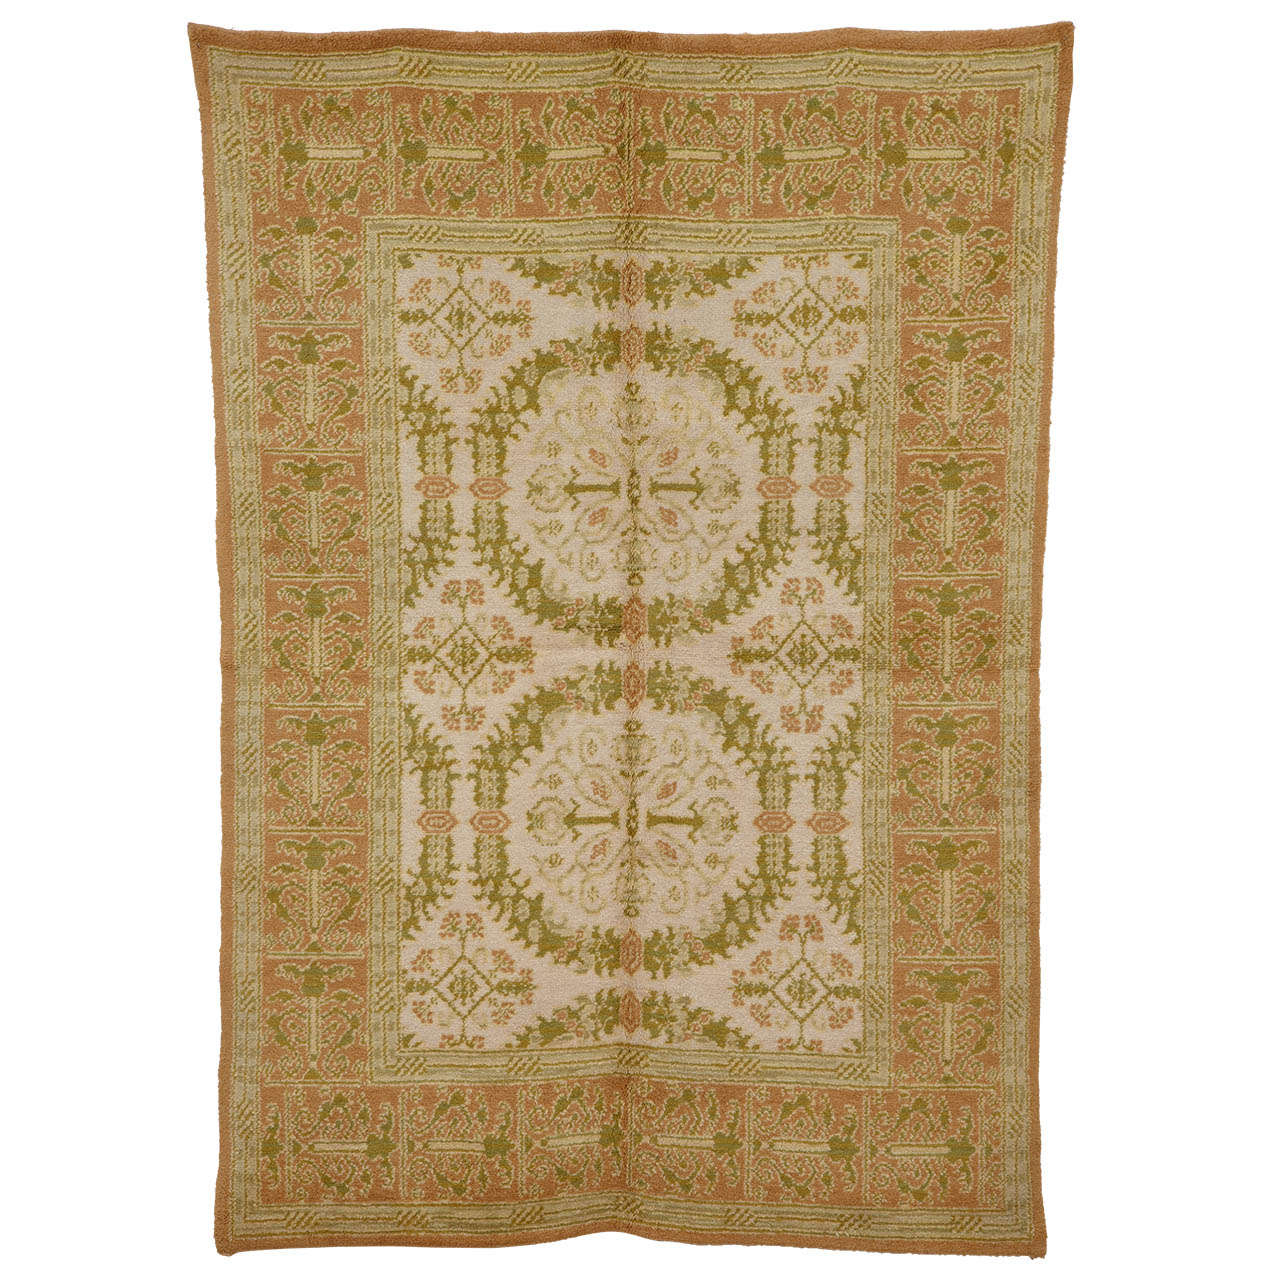 Spanischer Vintage-Teppich im Vintage-Stil im Cuenca-Stil mit Renaissance-kranz-Muster